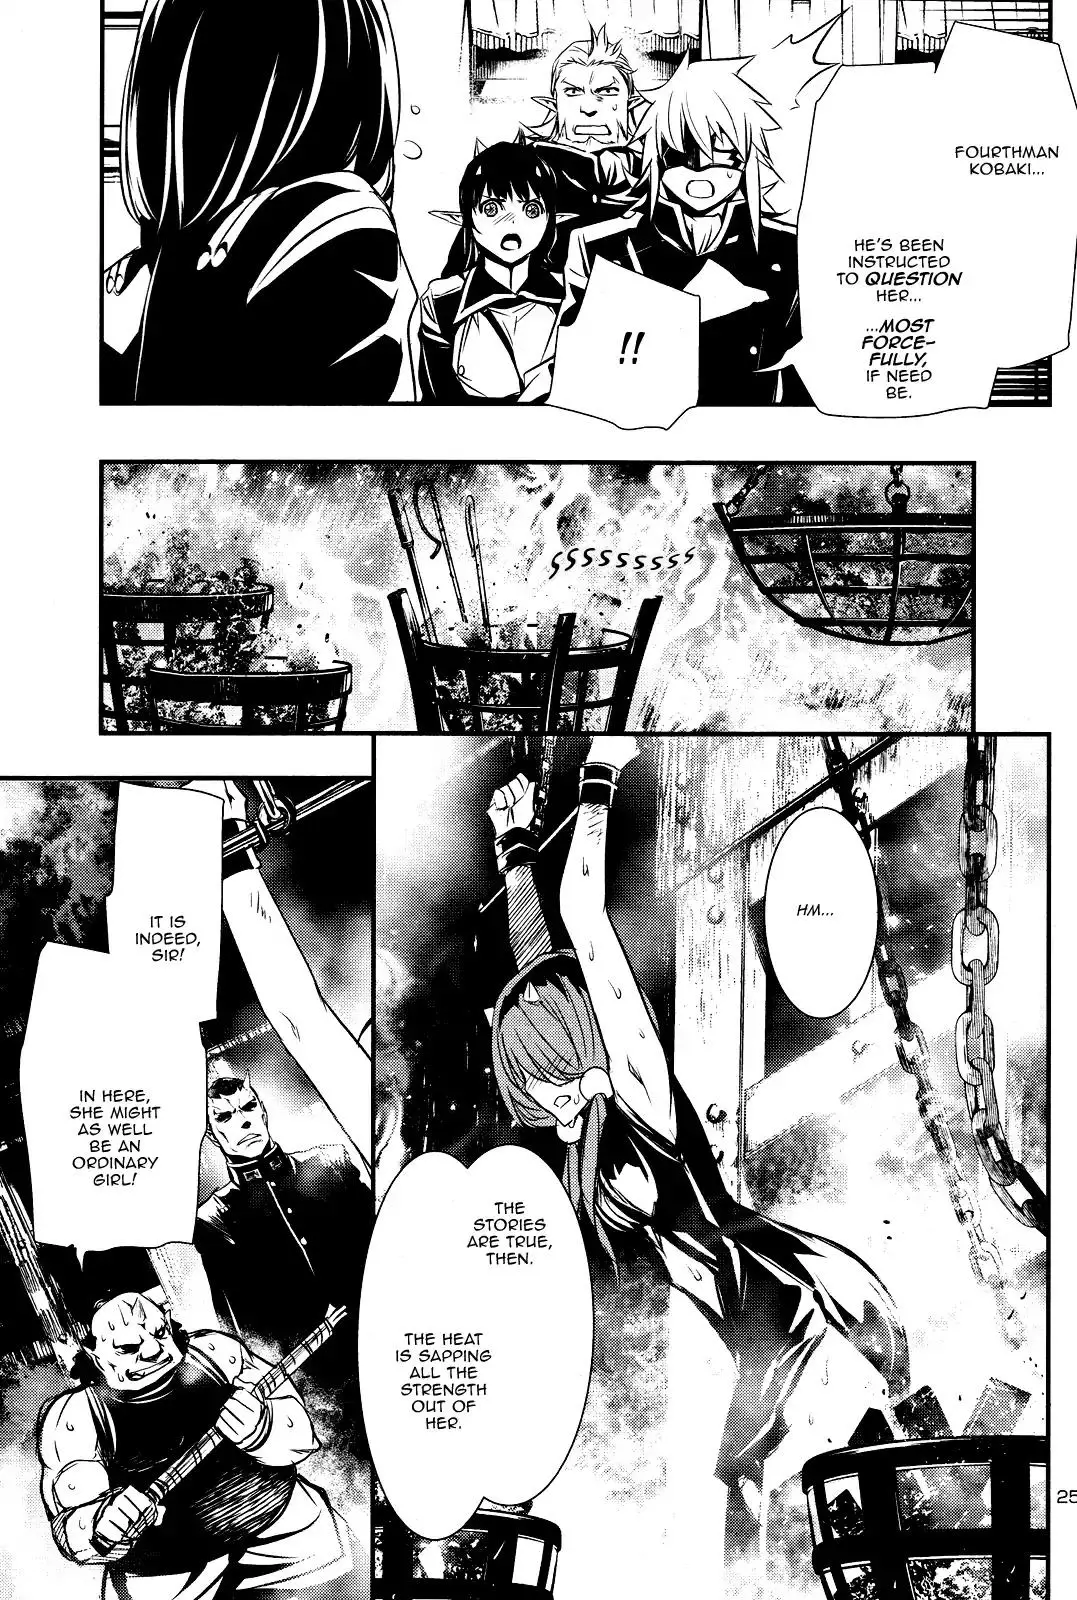 Shinju no Nectar - 23 page 23